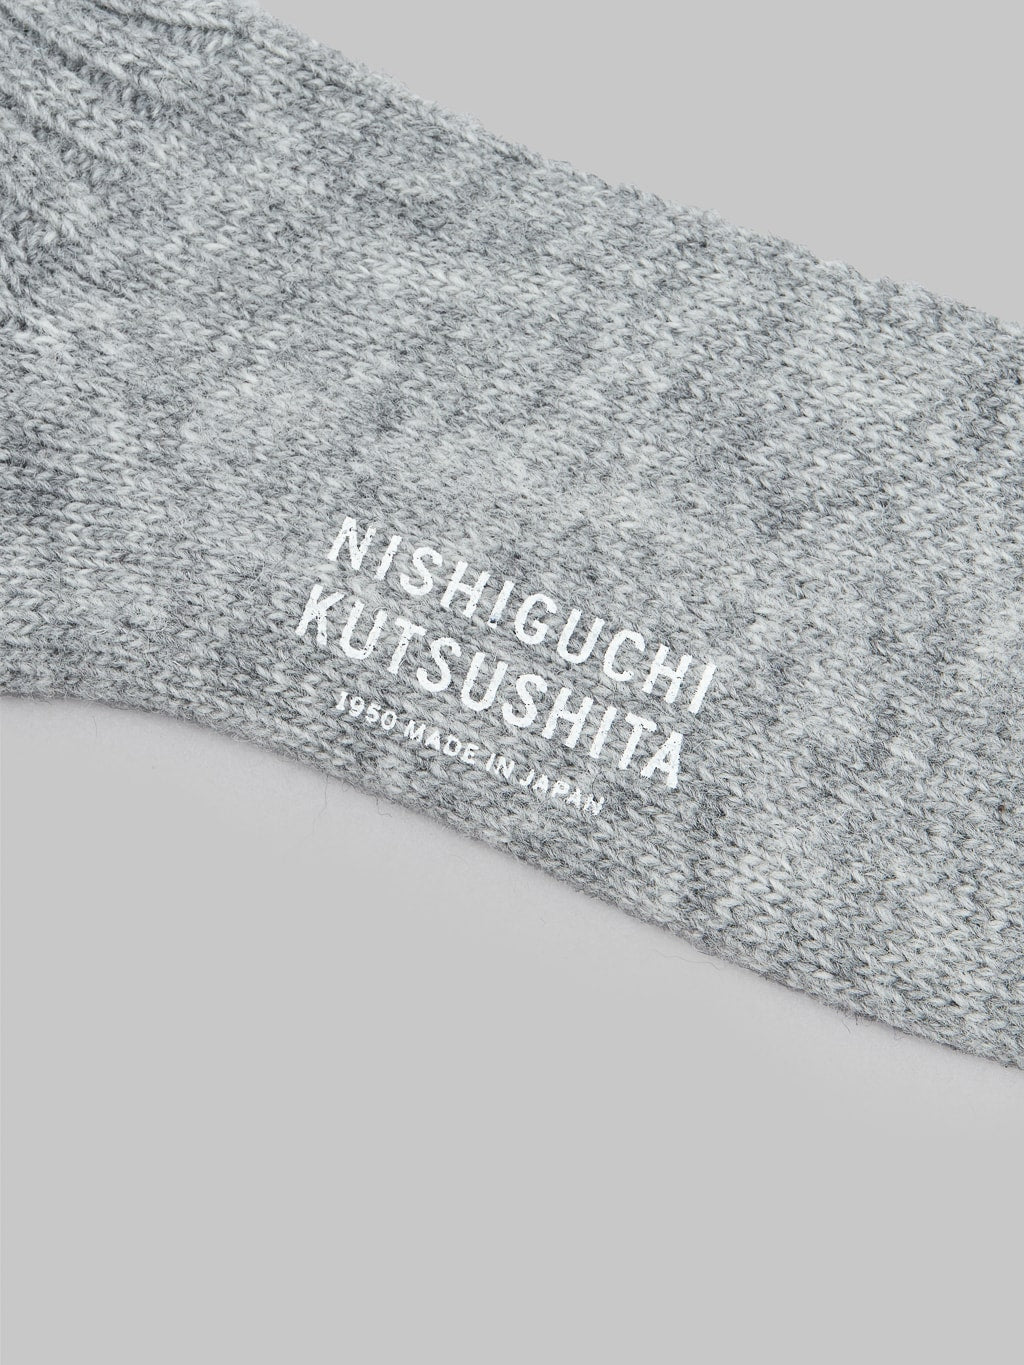 Nishiguchi Kutsushita Wool Ribbed Socks Light Grey Brand Logo